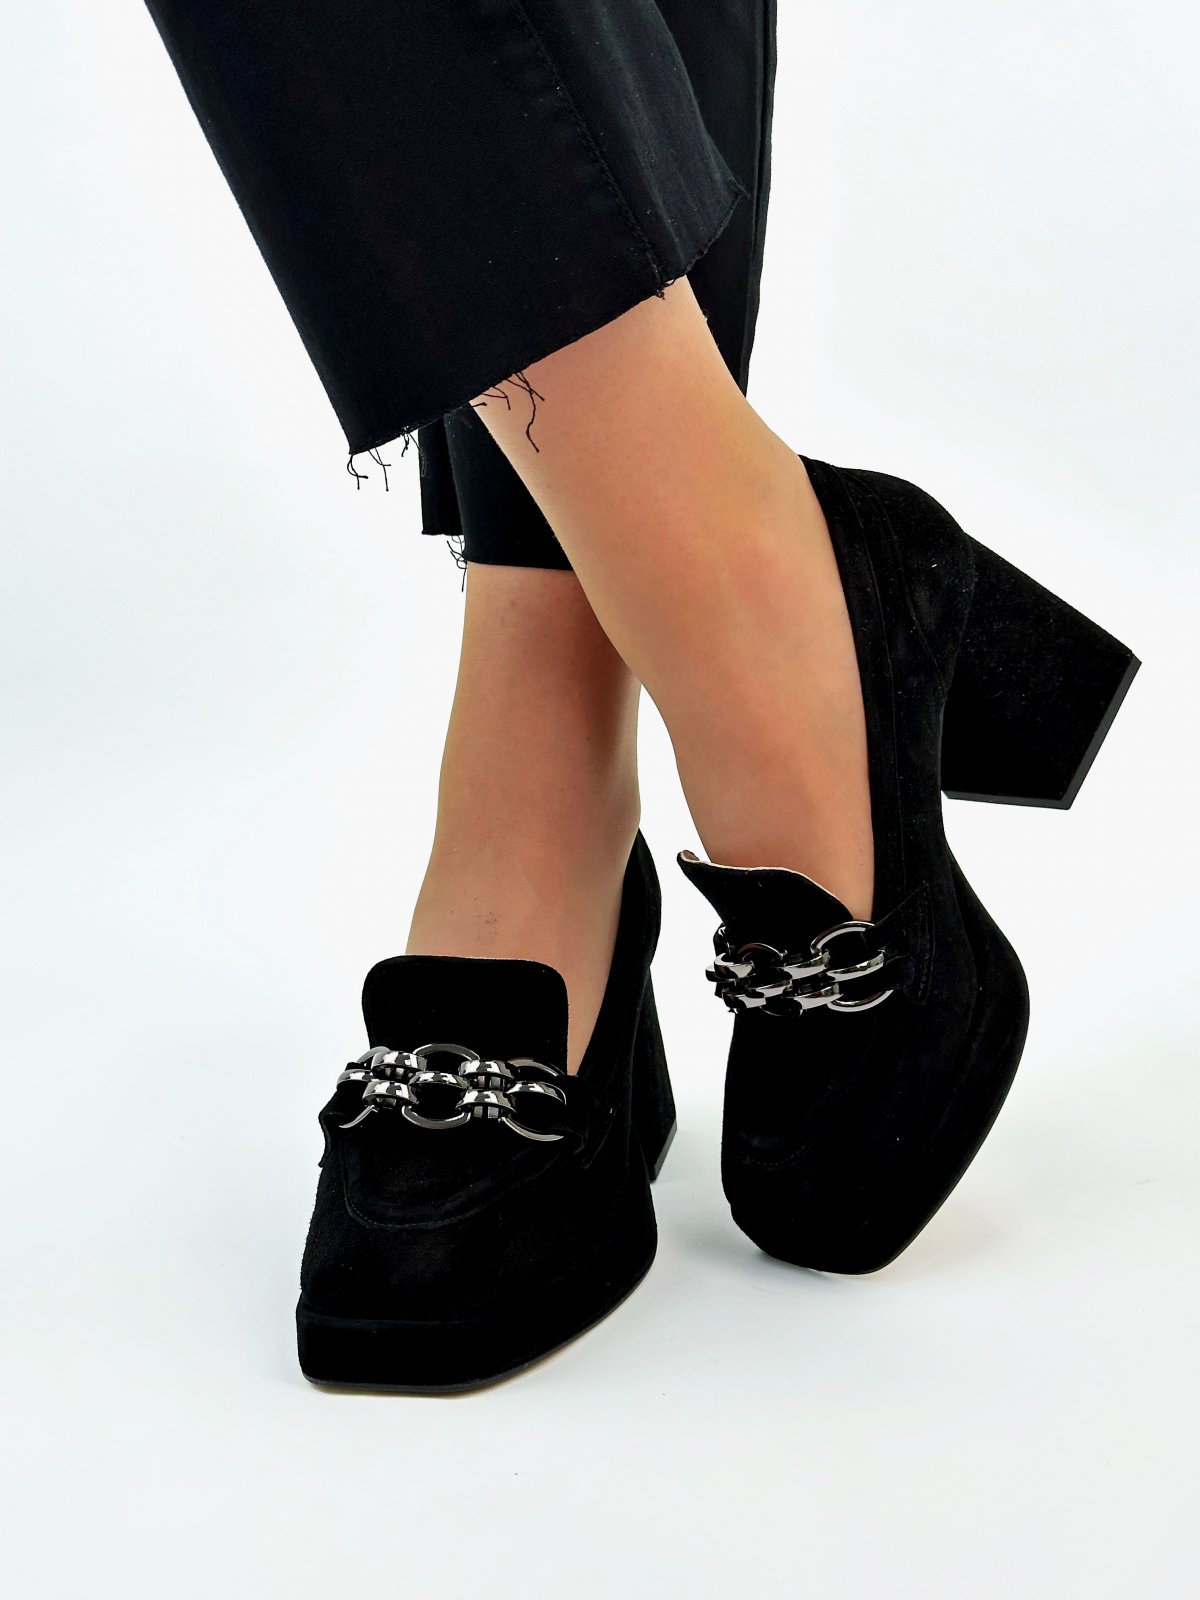 Фото: Вишукані туфлі з модною фурнітурою